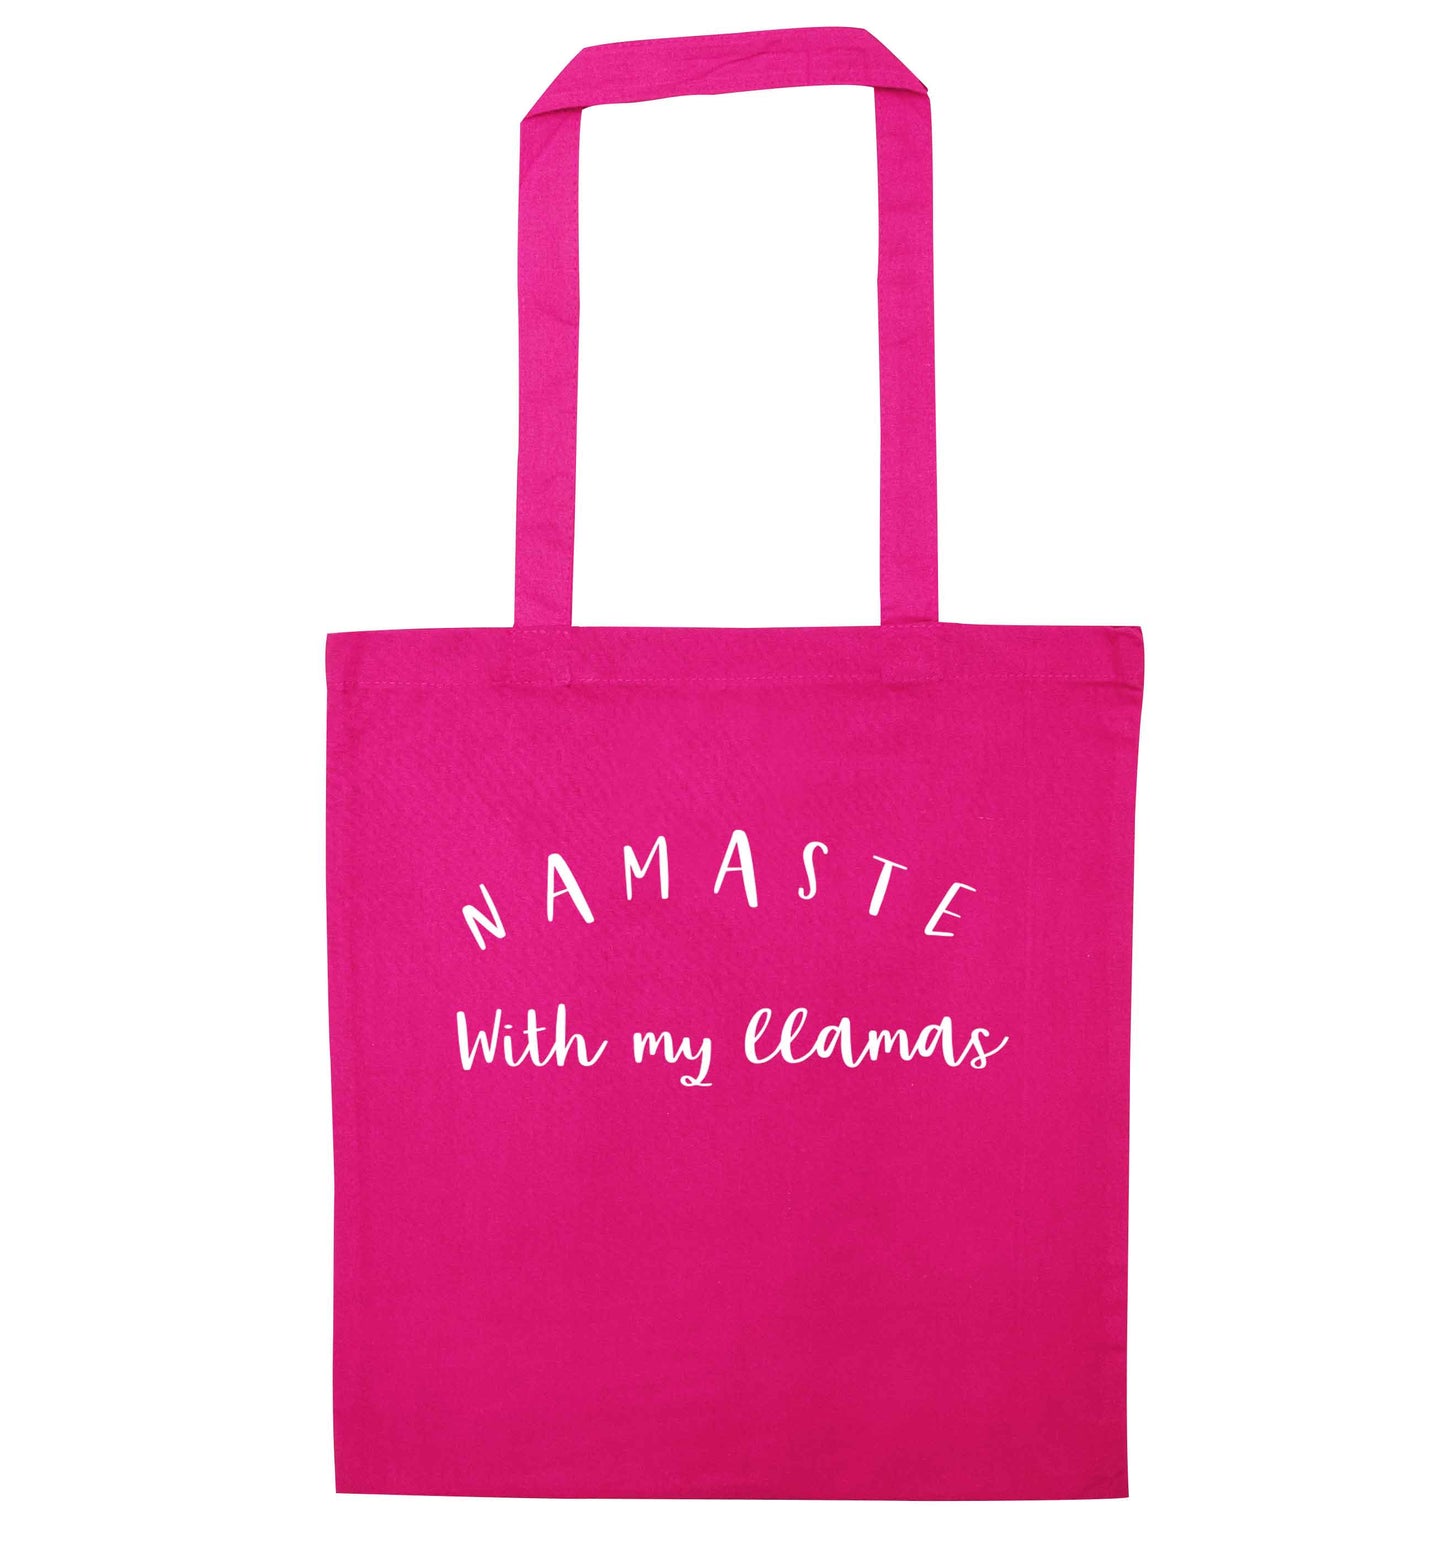 Namaste with my llamas pink tote bag